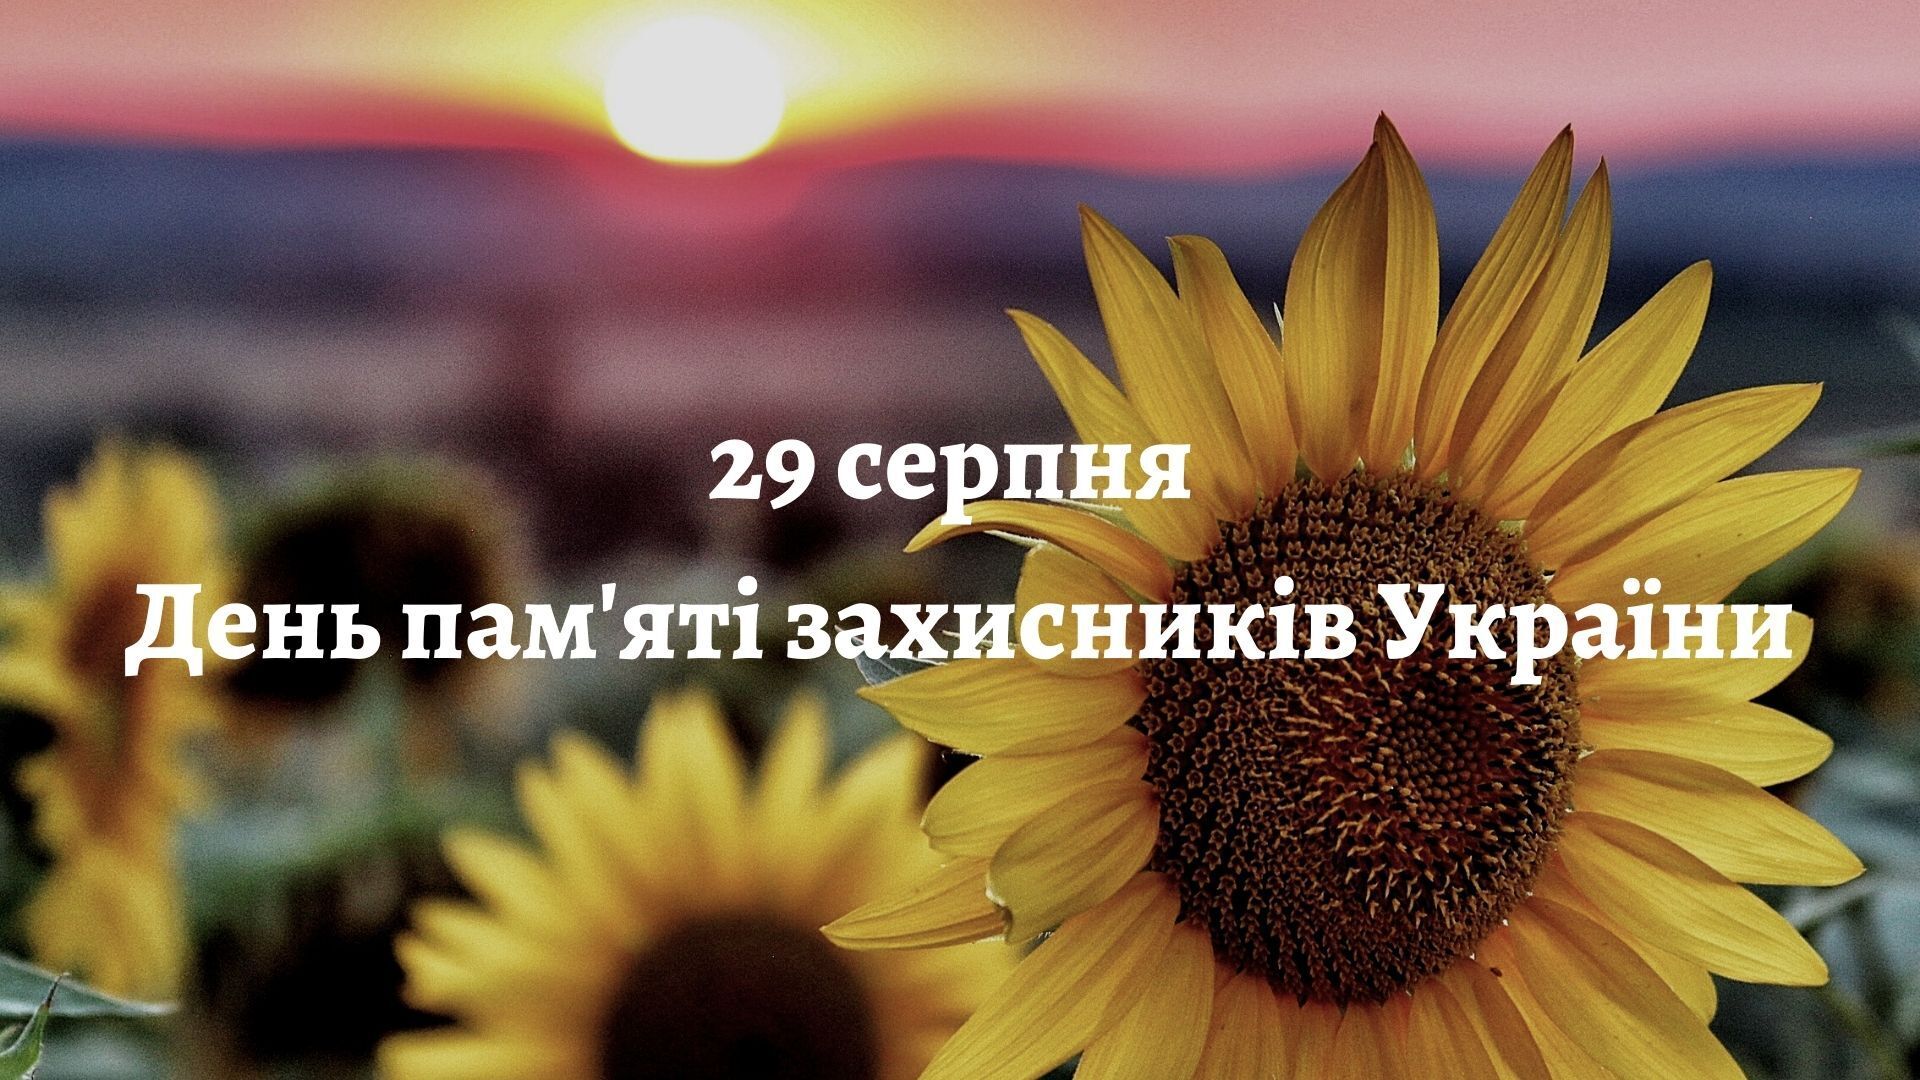 День пам'яті захисників України відзначається 29 серпня